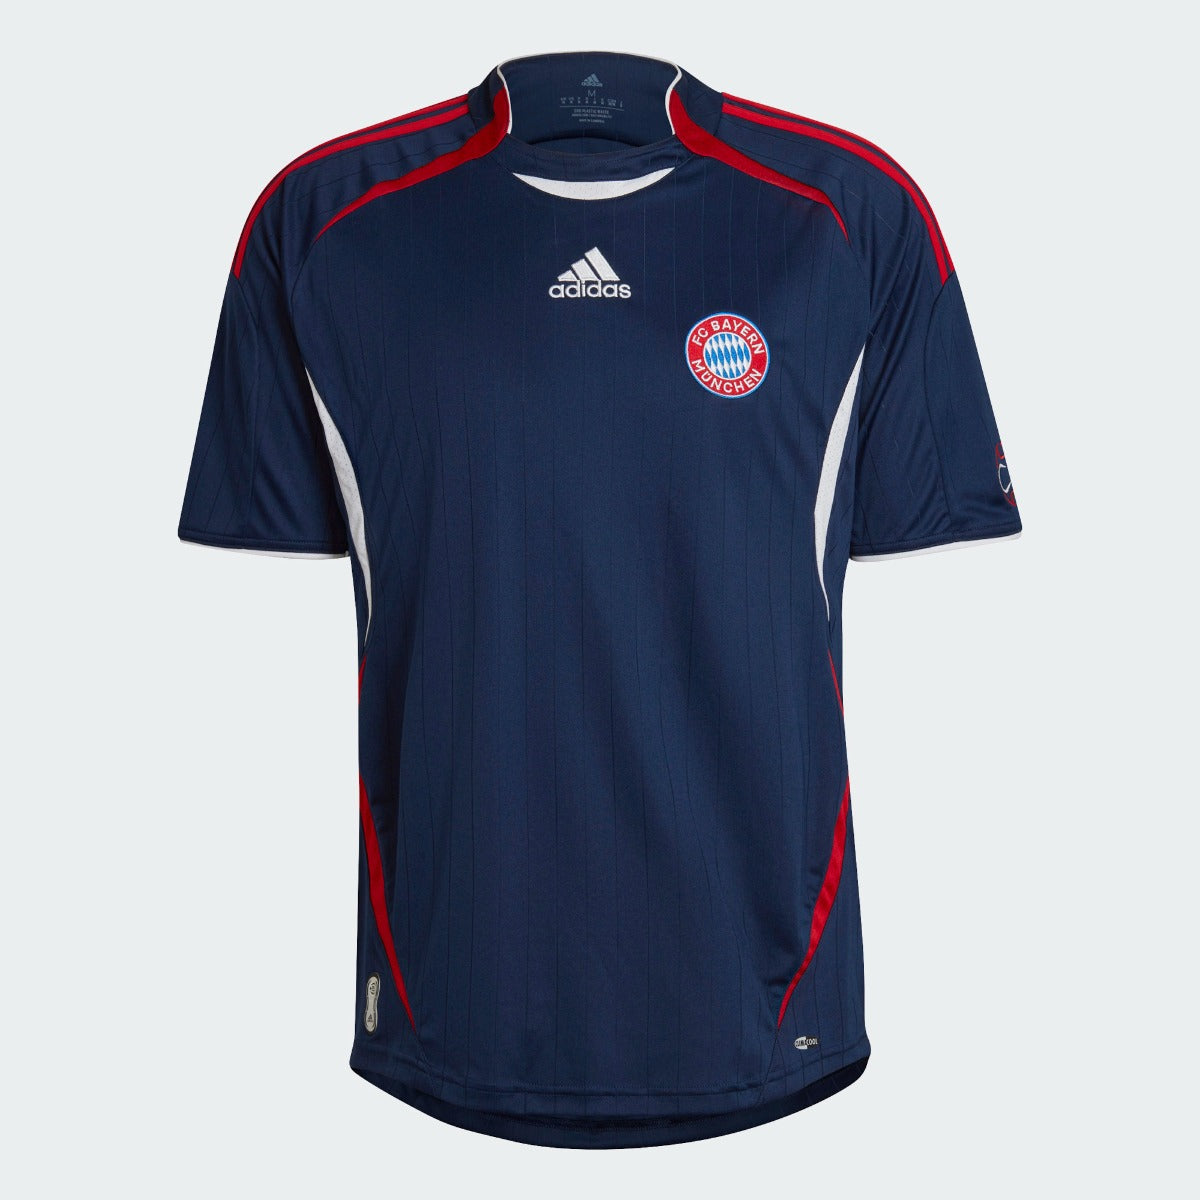 Adidas 2022 Bayern Munich Teamgeist Jersey - Night Indigo (Front)